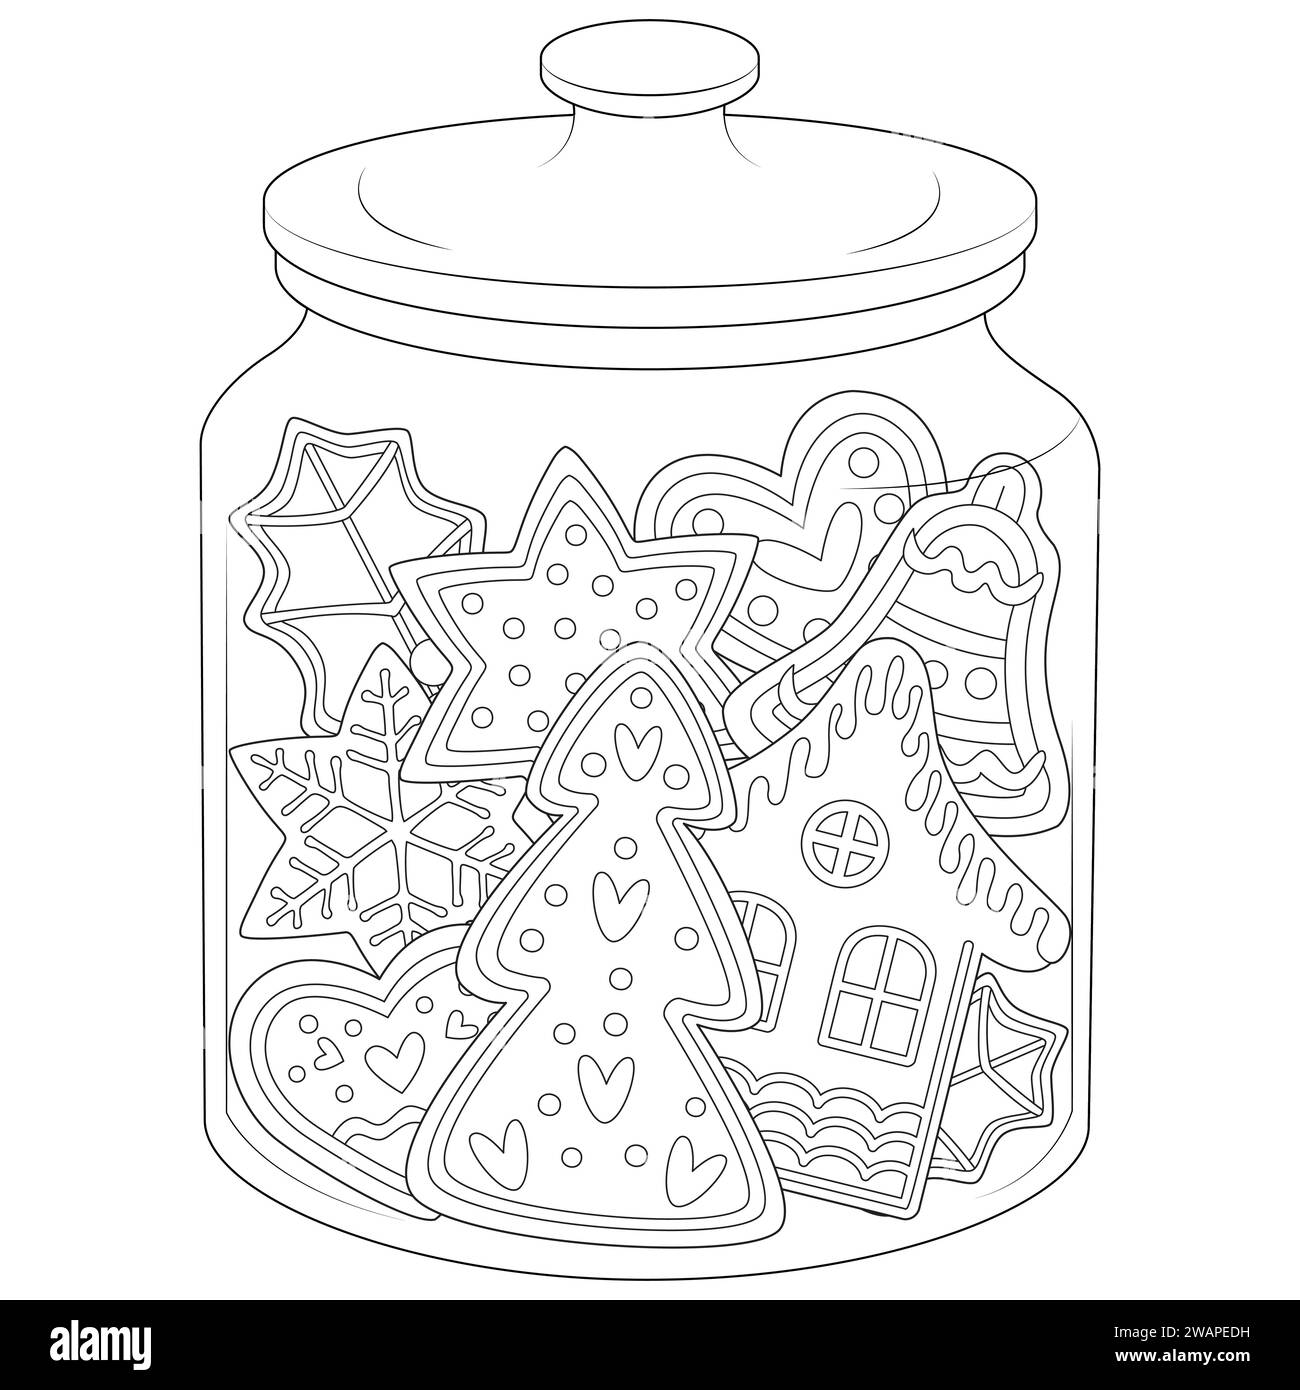 Weihnachtskuchenkekse in einem Glas Schwarz-weiß. Kunsttherapie Ausmalseite für Kinder und Erwachsene. Vektorabbildung Stock Vektor